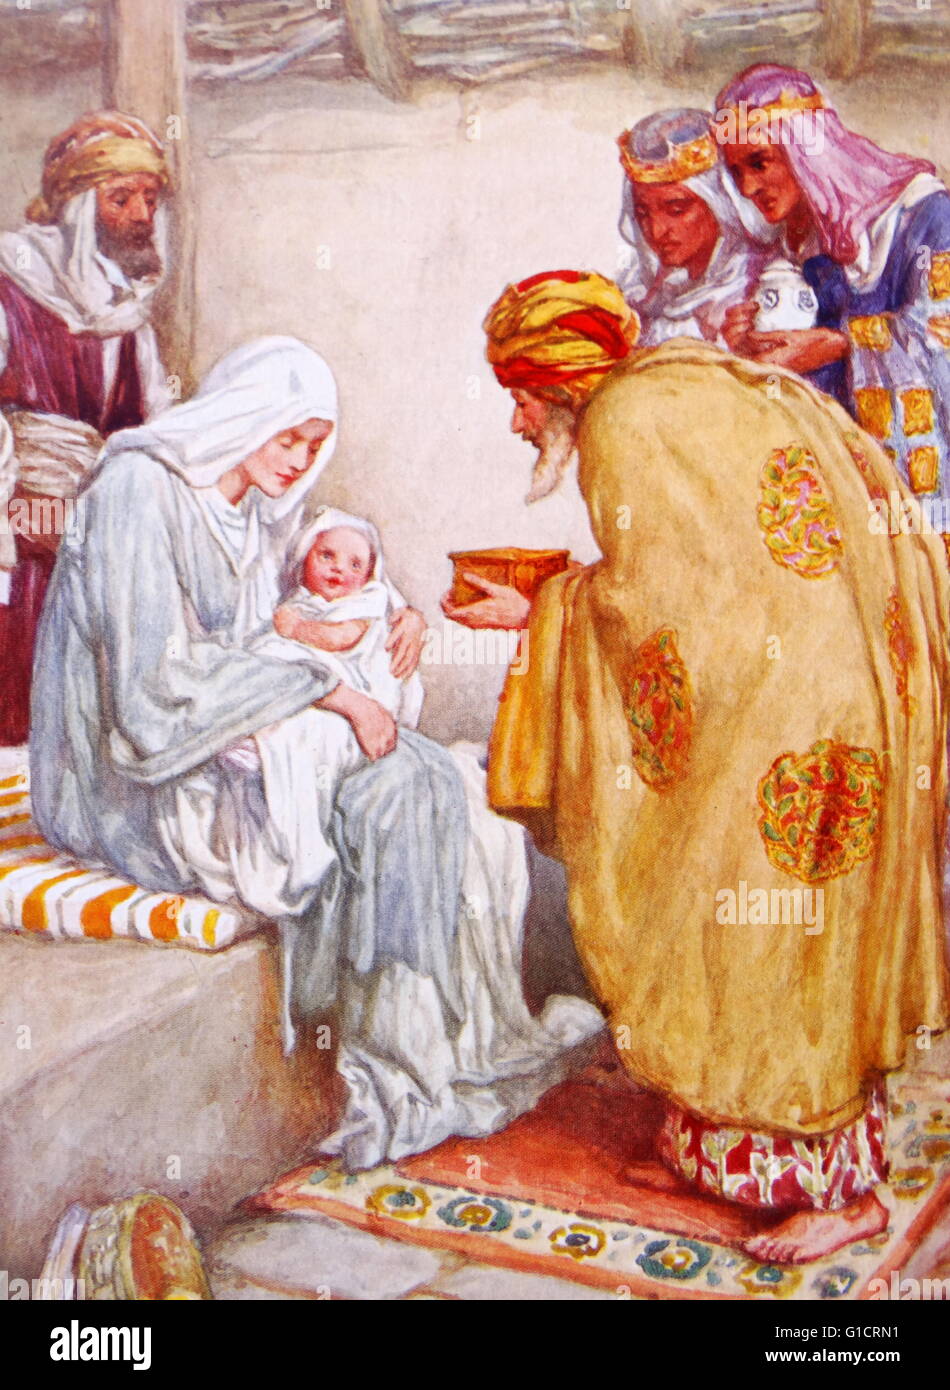 I Magi (tre saggi o dei tre re) nella tradizione cristiana; un gruppo che si è recato in visita a Gesù dopo la sua nascita; portando doni di oro, incenso e mirra. Foto Stock